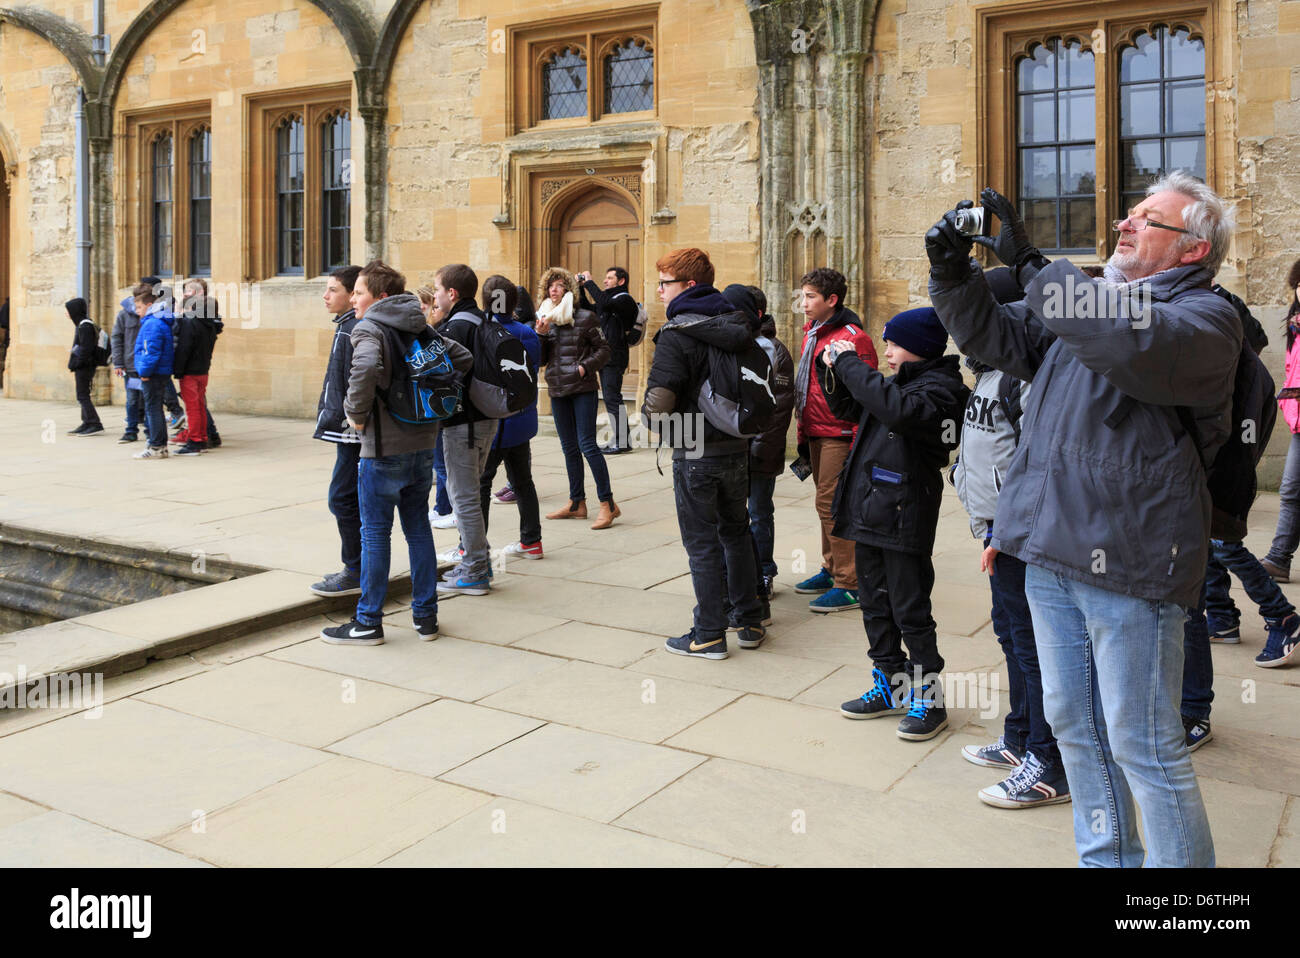 Les écoliers et les touristes de prendre des photographies dans Tom quadrilatère du Christ Church College, Université d'Oxford, Oxfordshire, England, UK, Grande-Bretagne Banque D'Images